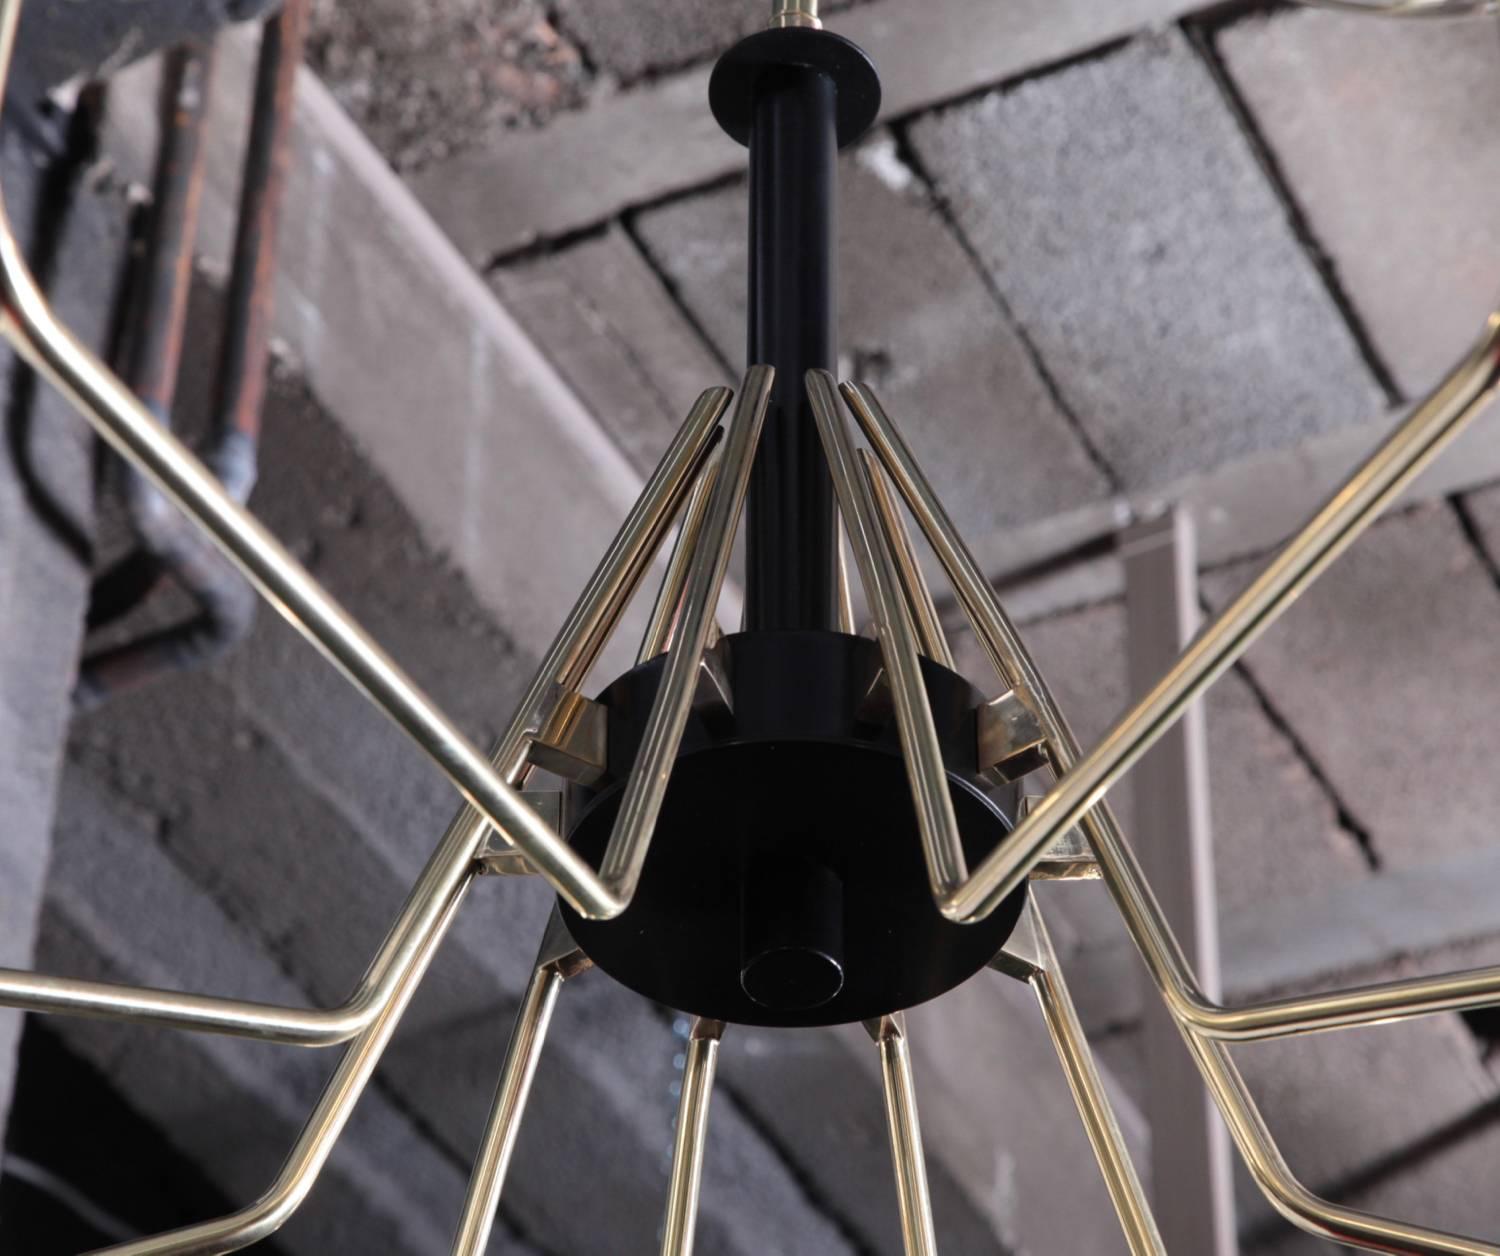 Monumentaler Sputnik-Kronleuchter aus Messing und schwarzem Metall mit bunten Glaskugeln. Der Kronleuchter hat eine sehr beeindruckende Größe und ist ein echter Blickfang in jedem Raum. Der Kronleuchter ist in ausgezeichnetem Zustand. Maße: 10 x E27